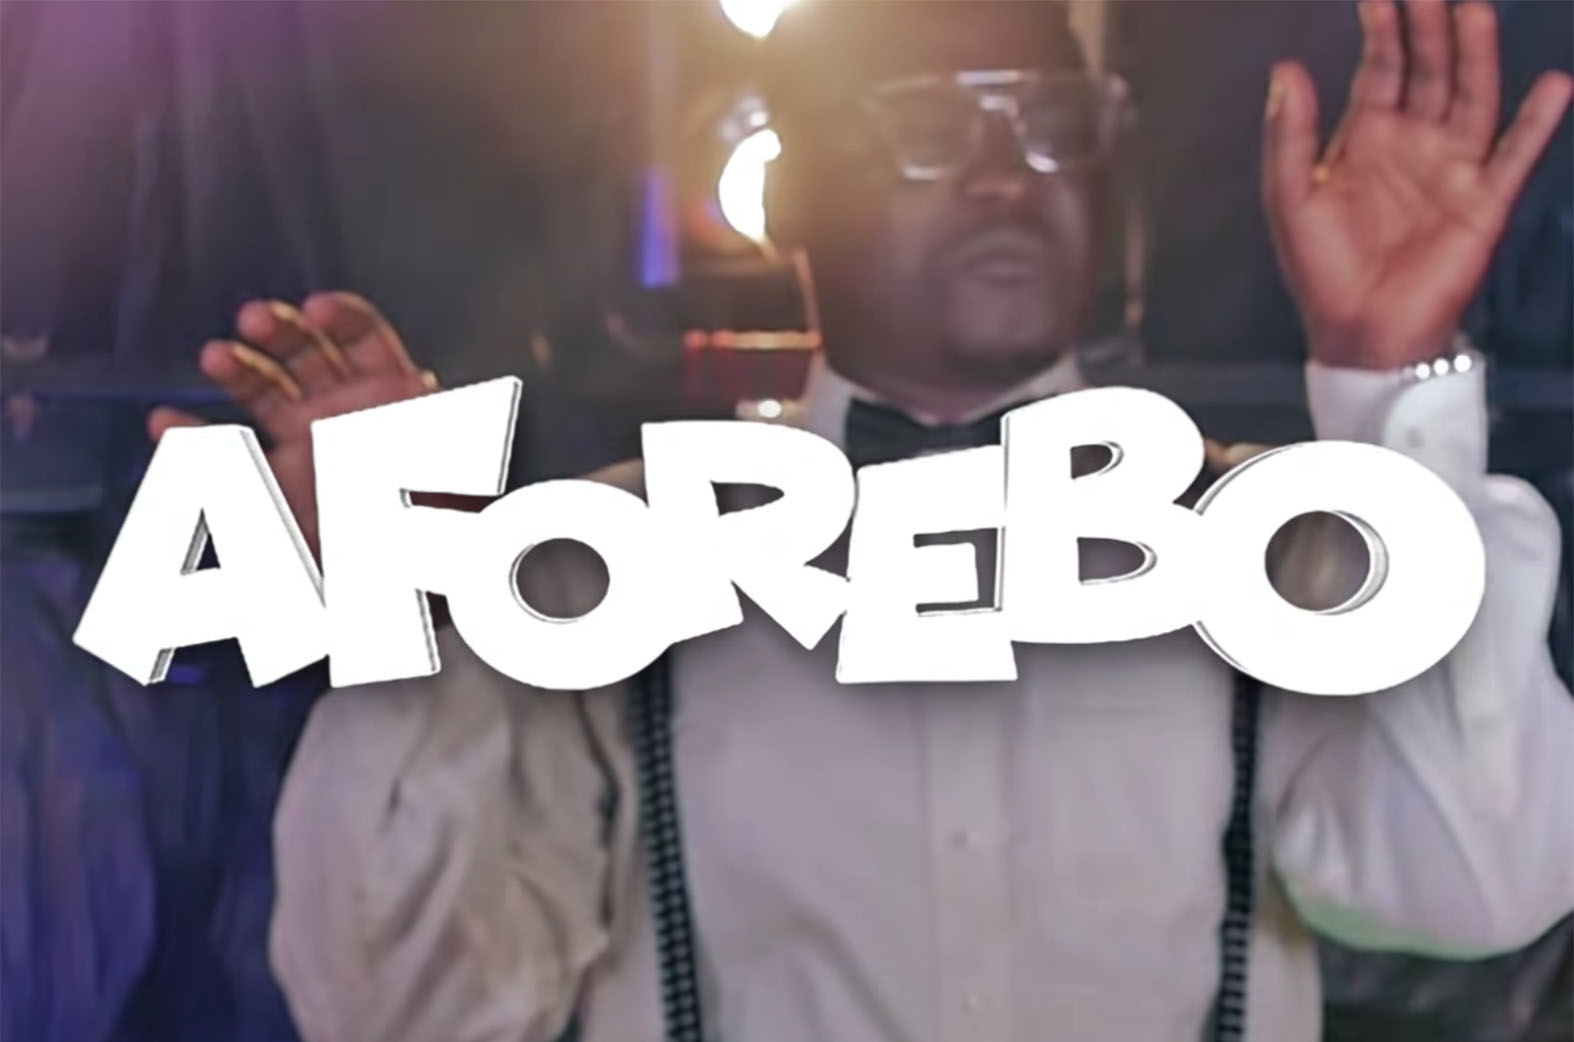 Video: Aforebo by Carl Clottey